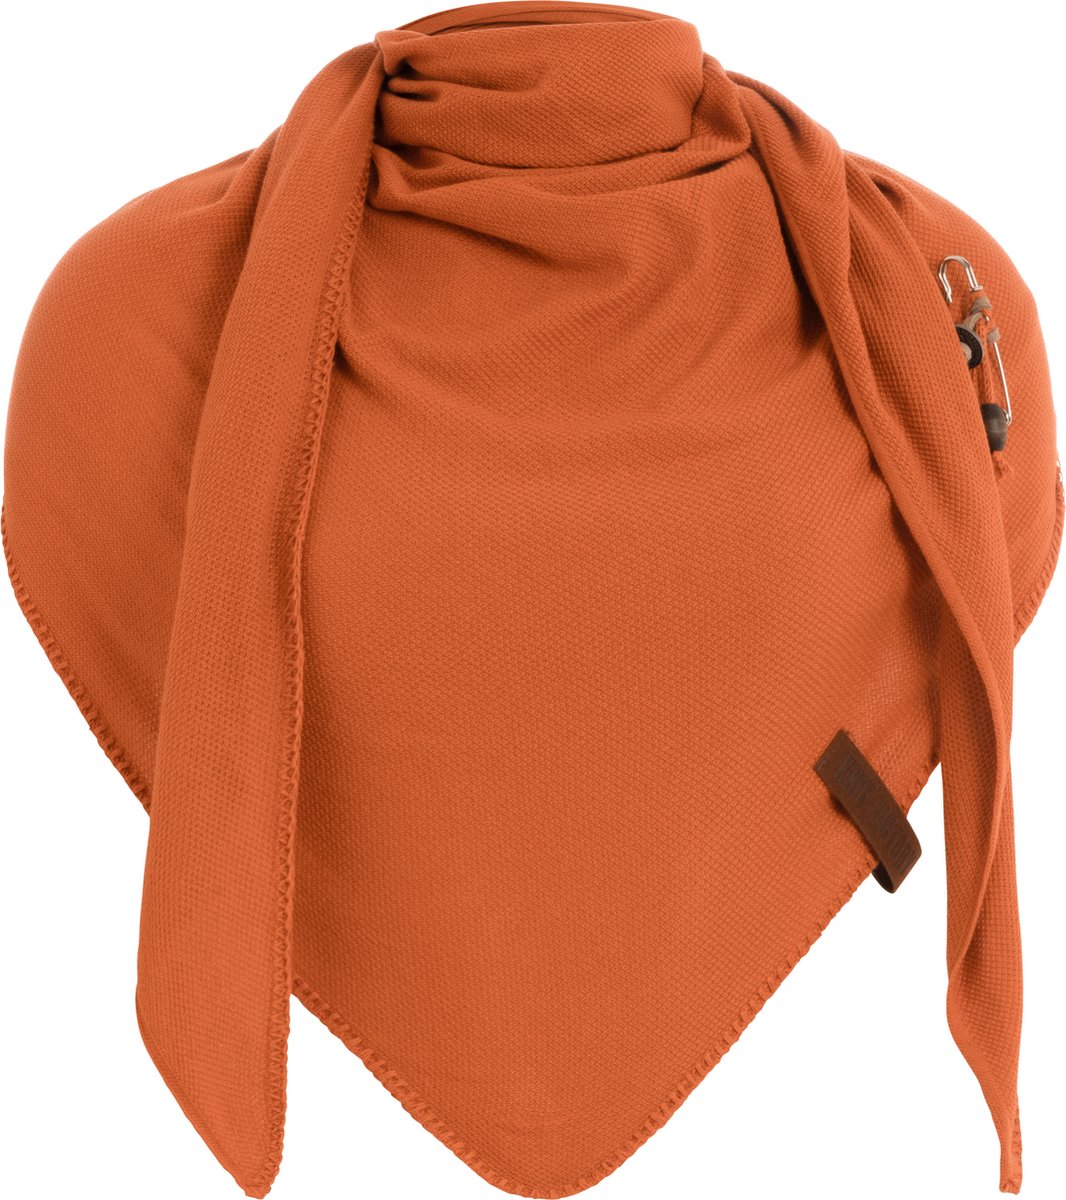 Knit Factory Lola Gebreide Omslagdoek - Driehoek Sjaal Dames - Katoenen sjaal - Luchtige Sjaal voor de lente, zomer en herfst - Stola - Baked Orange - 190x85 cm - Inclusief sierspeld